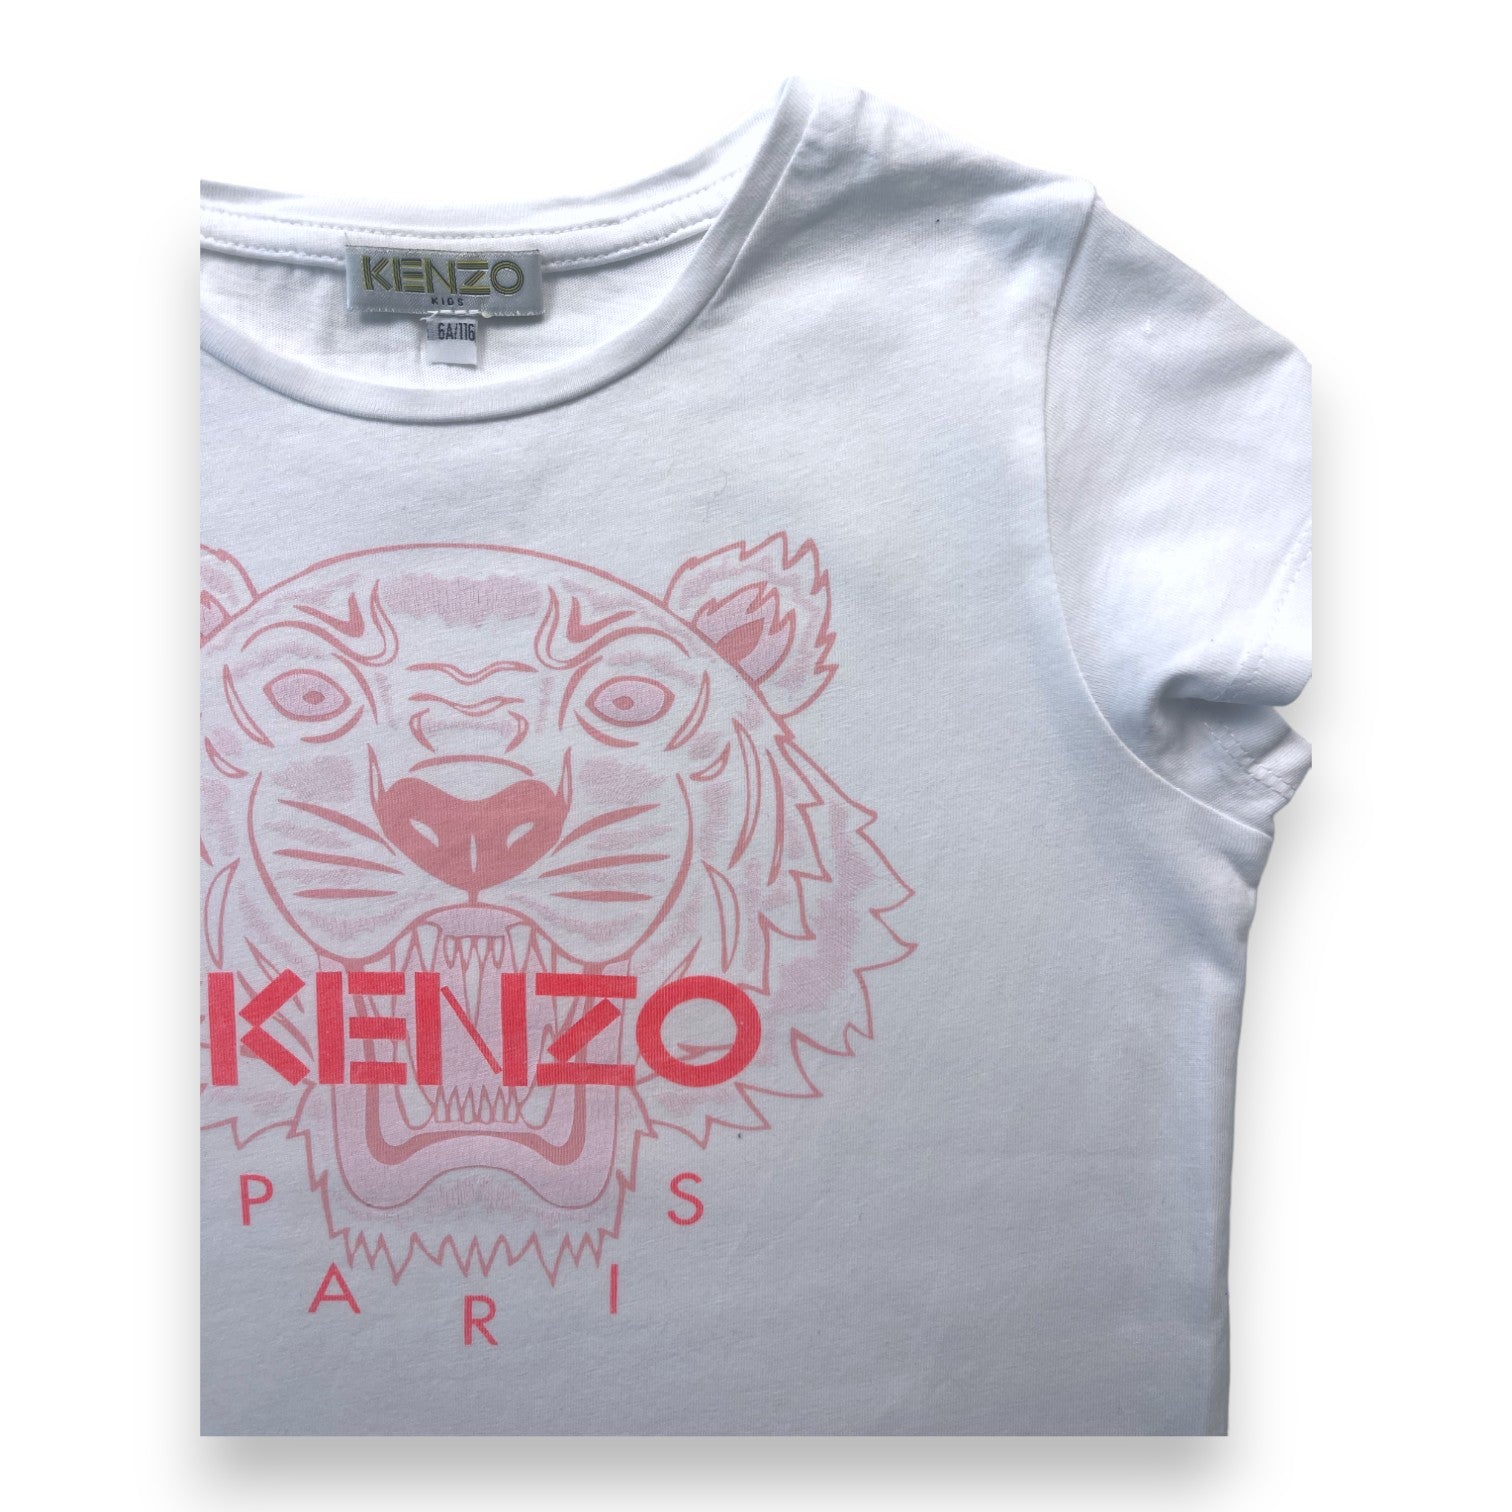 KENZO - T shirt blanc tête de lion rose - 6 ans